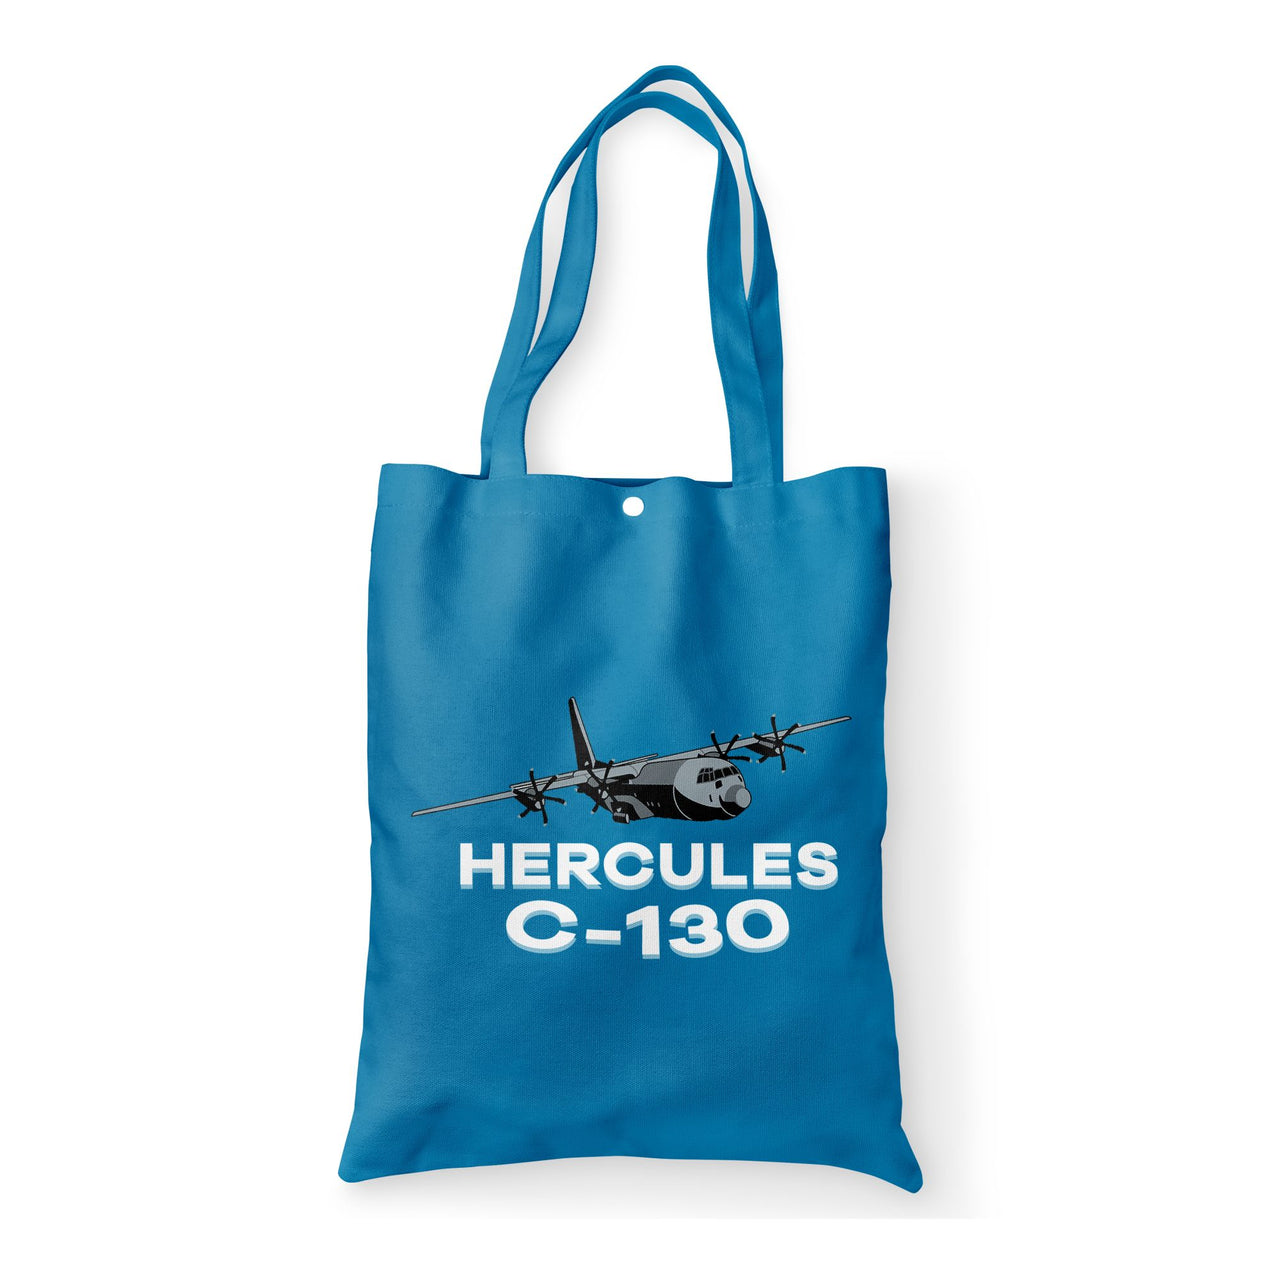 The Hercules C130 Designed Tote Bags